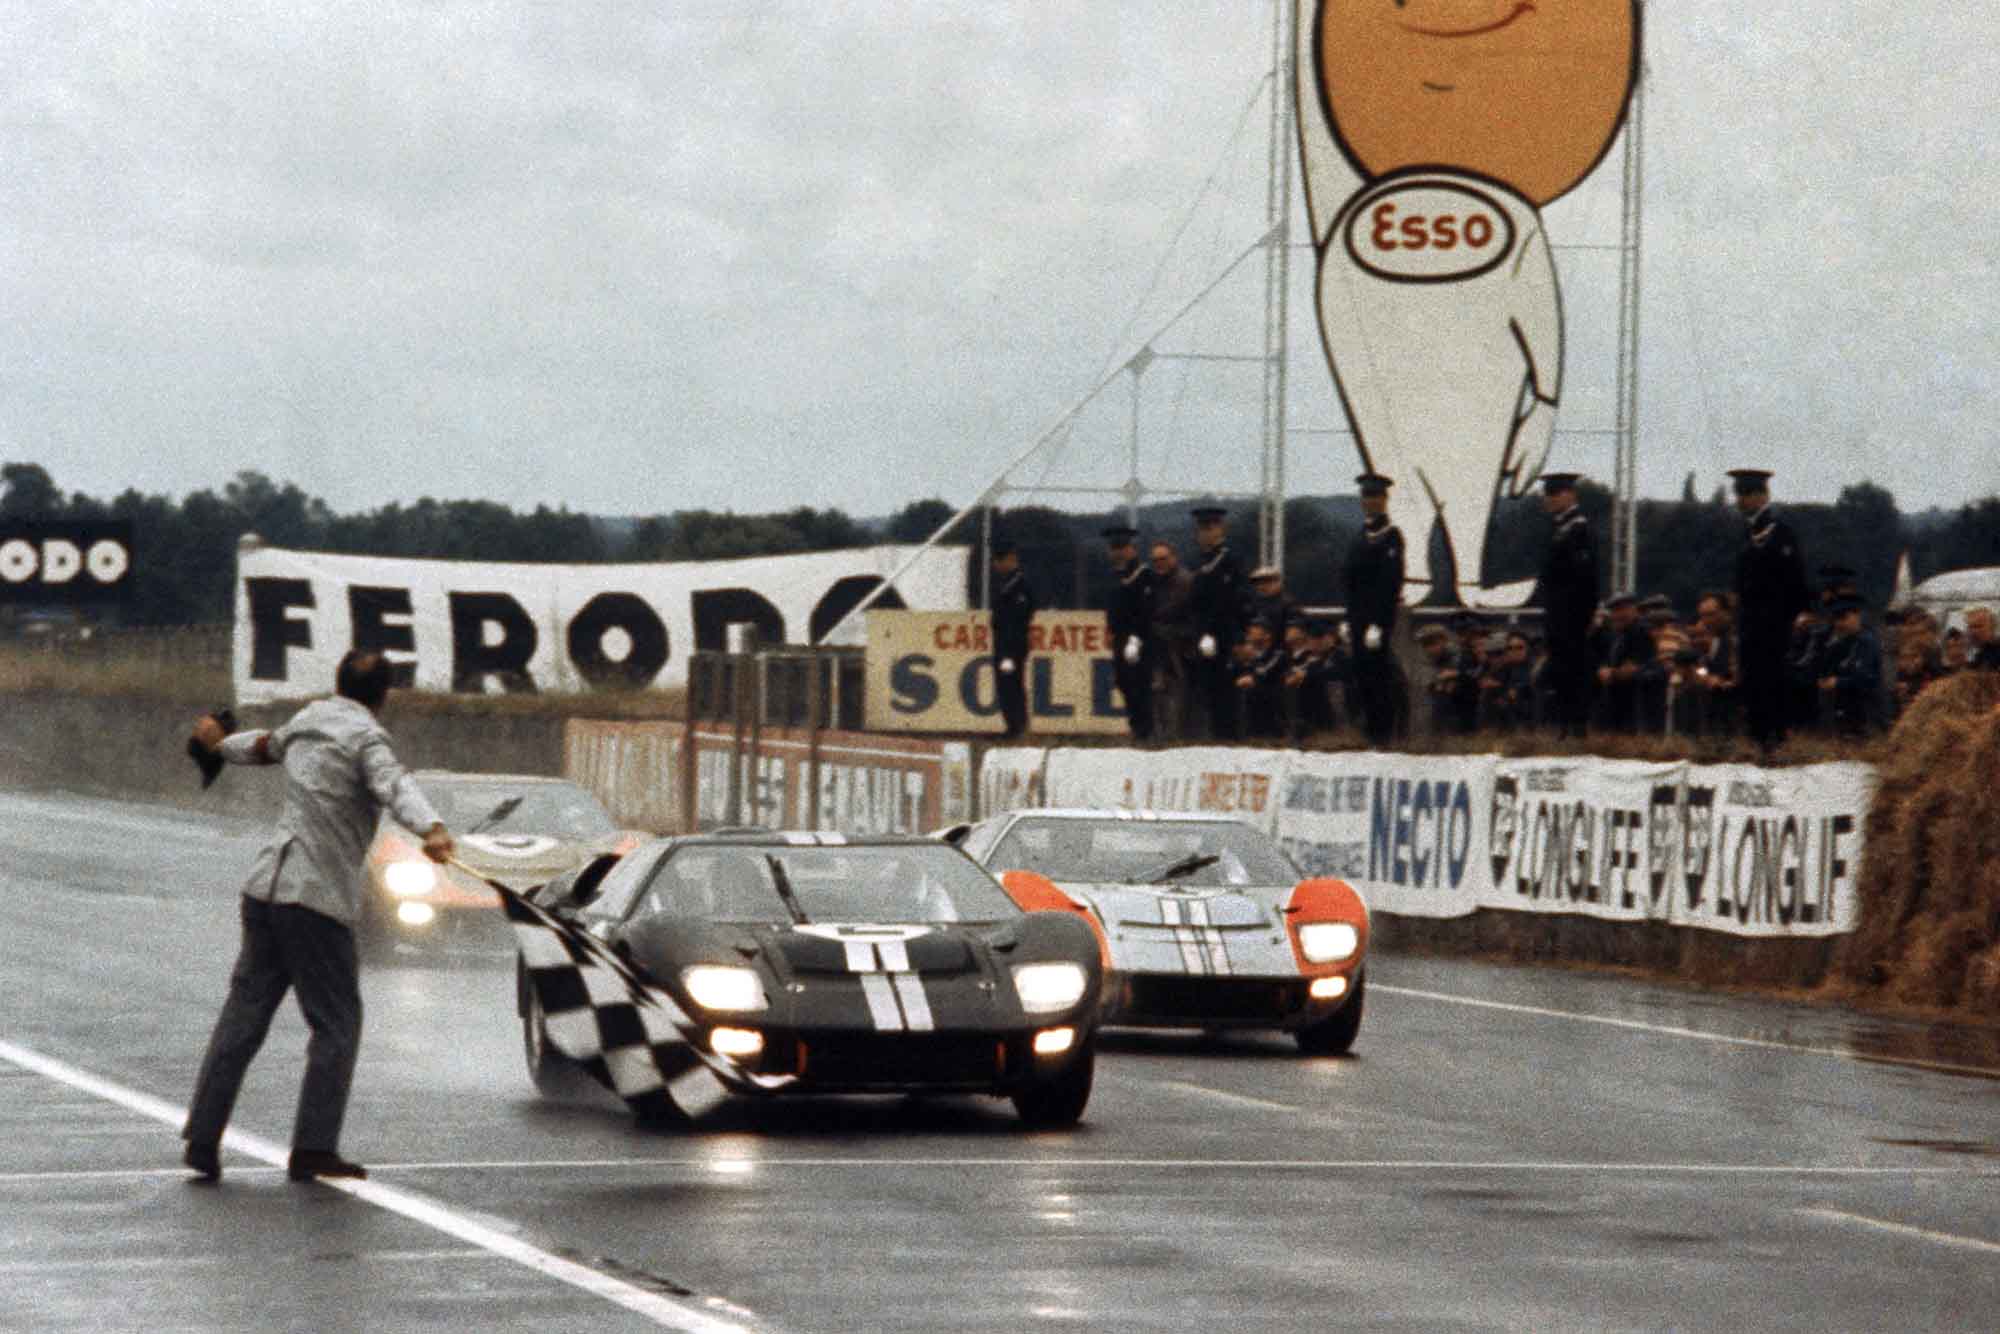 - Le Mans yarışını kazanan Bentley takımının sahibi John Wickham, 73 yaşında hayatını kaybetti.